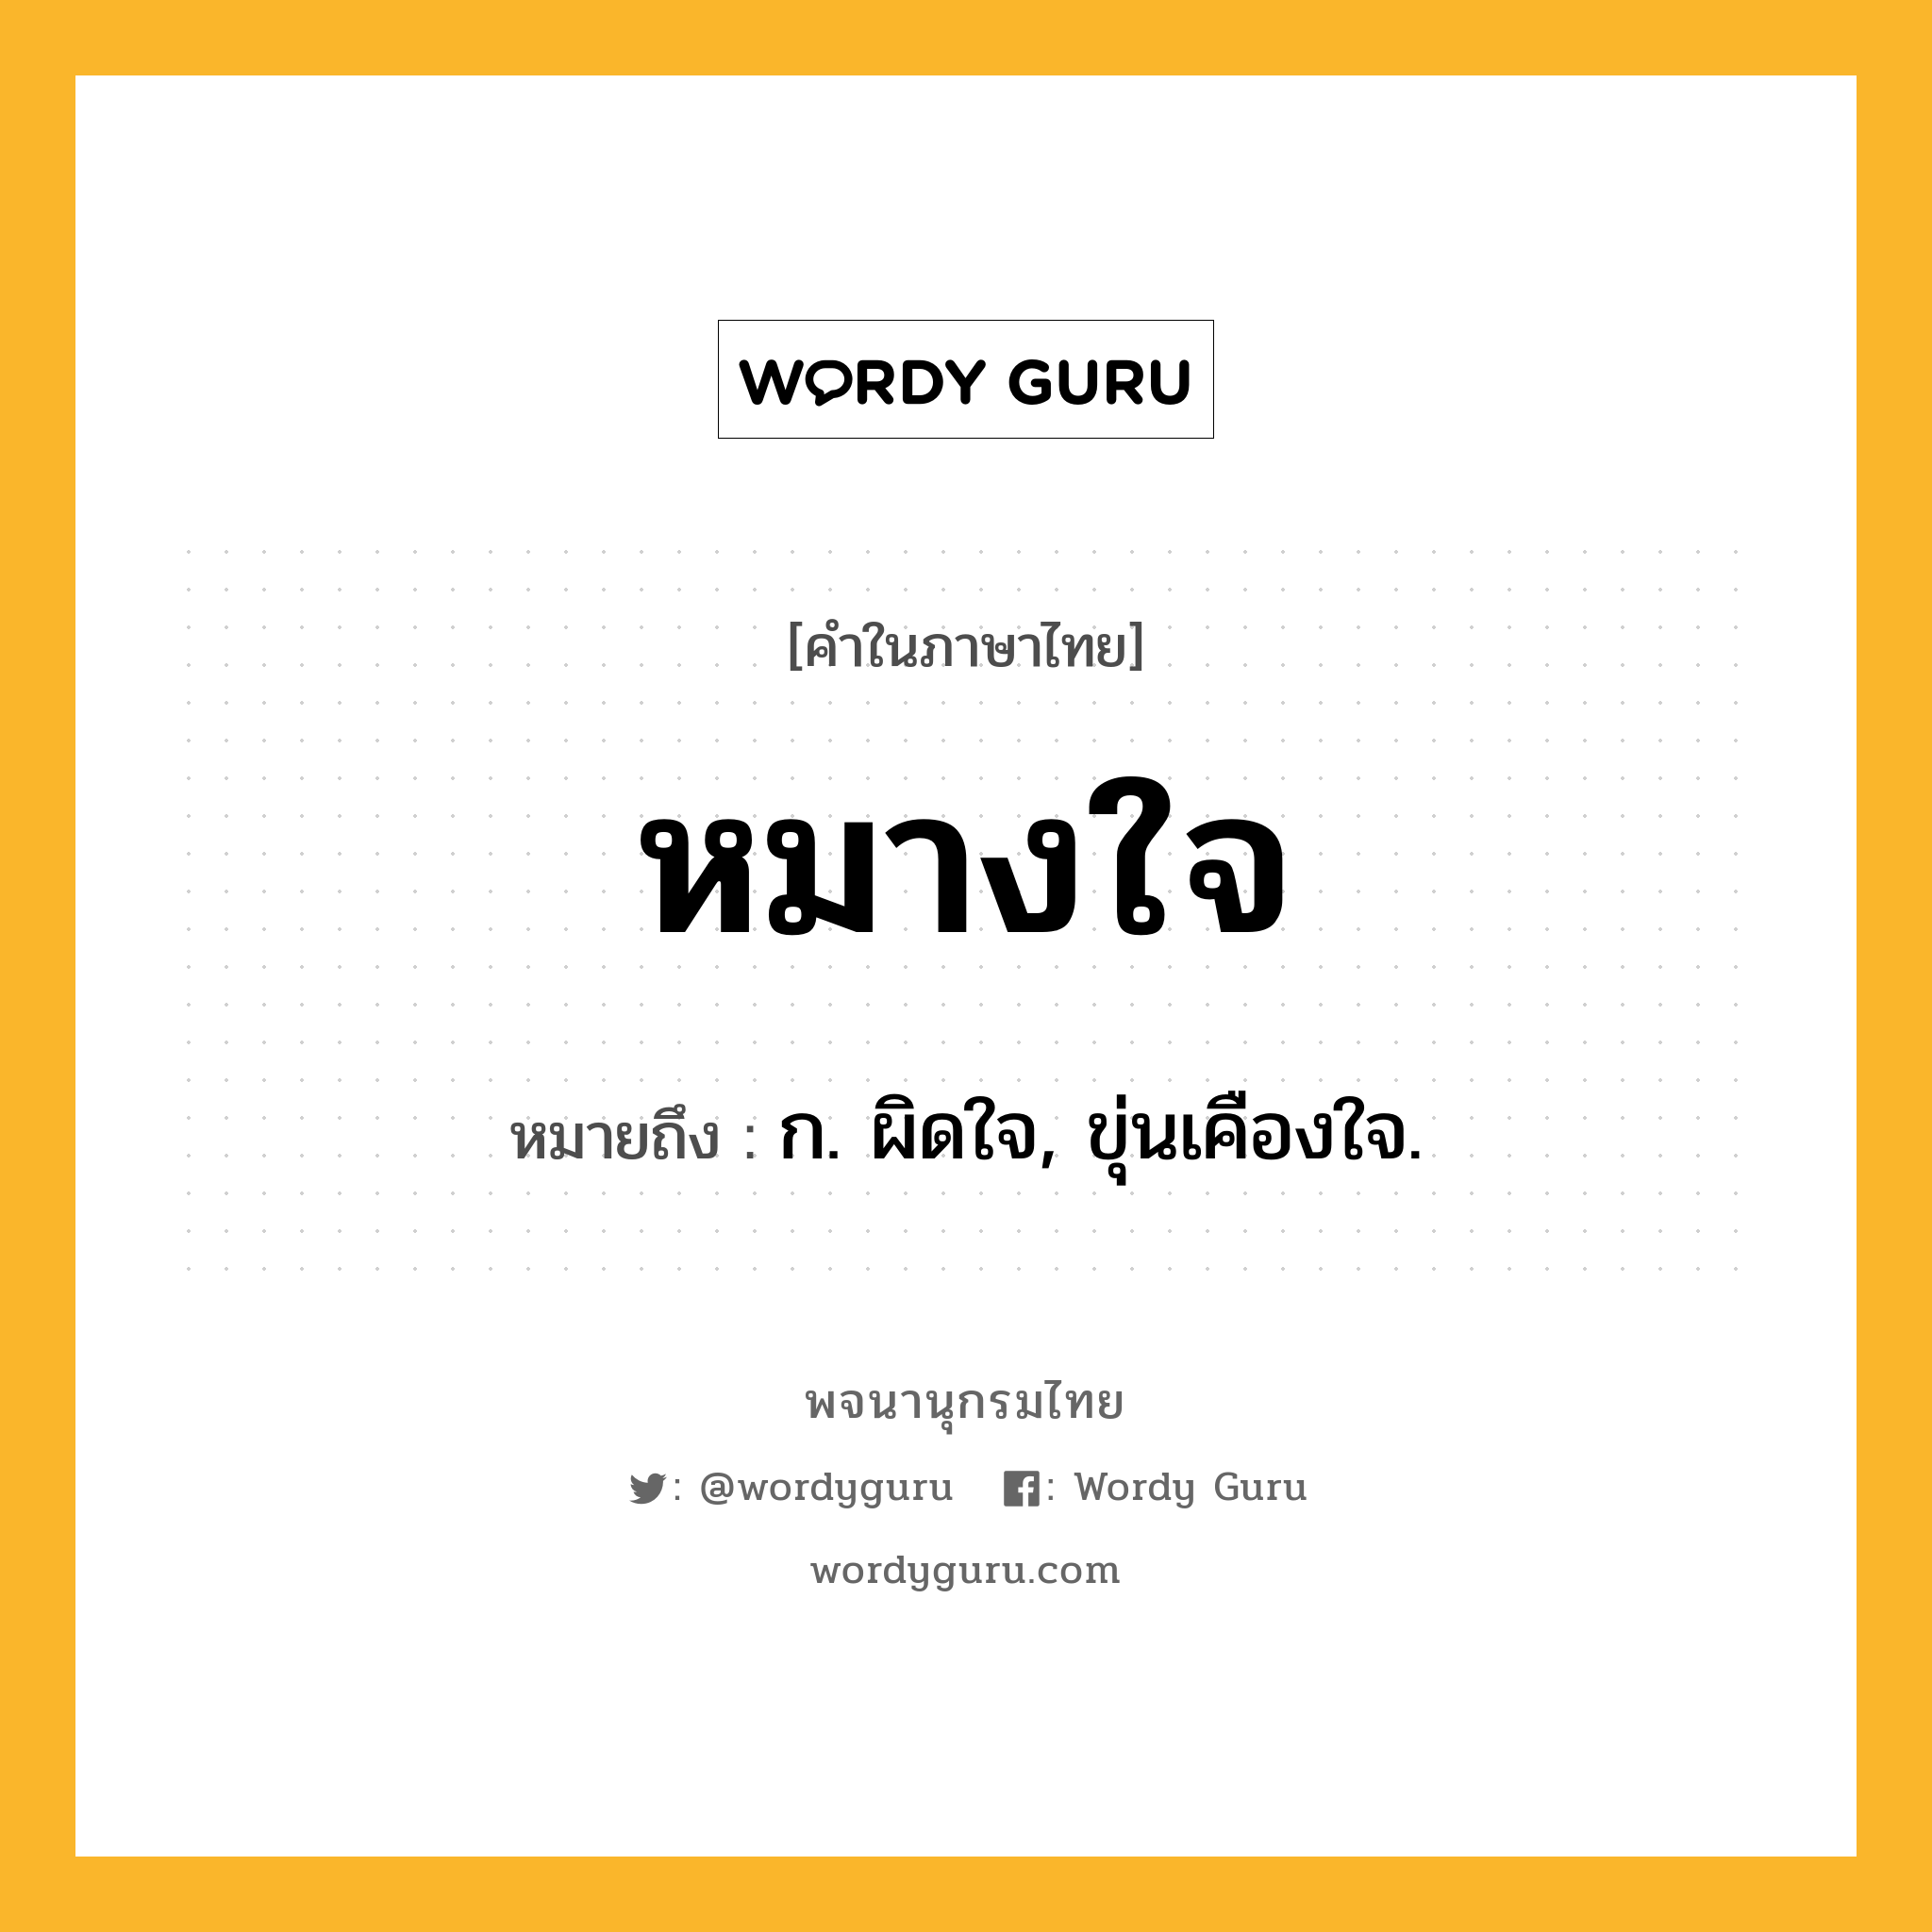 หมางใจ ความหมาย หมายถึงอะไร?, คำในภาษาไทย หมางใจ หมายถึง ก. ผิดใจ, ขุ่นเคืองใจ.